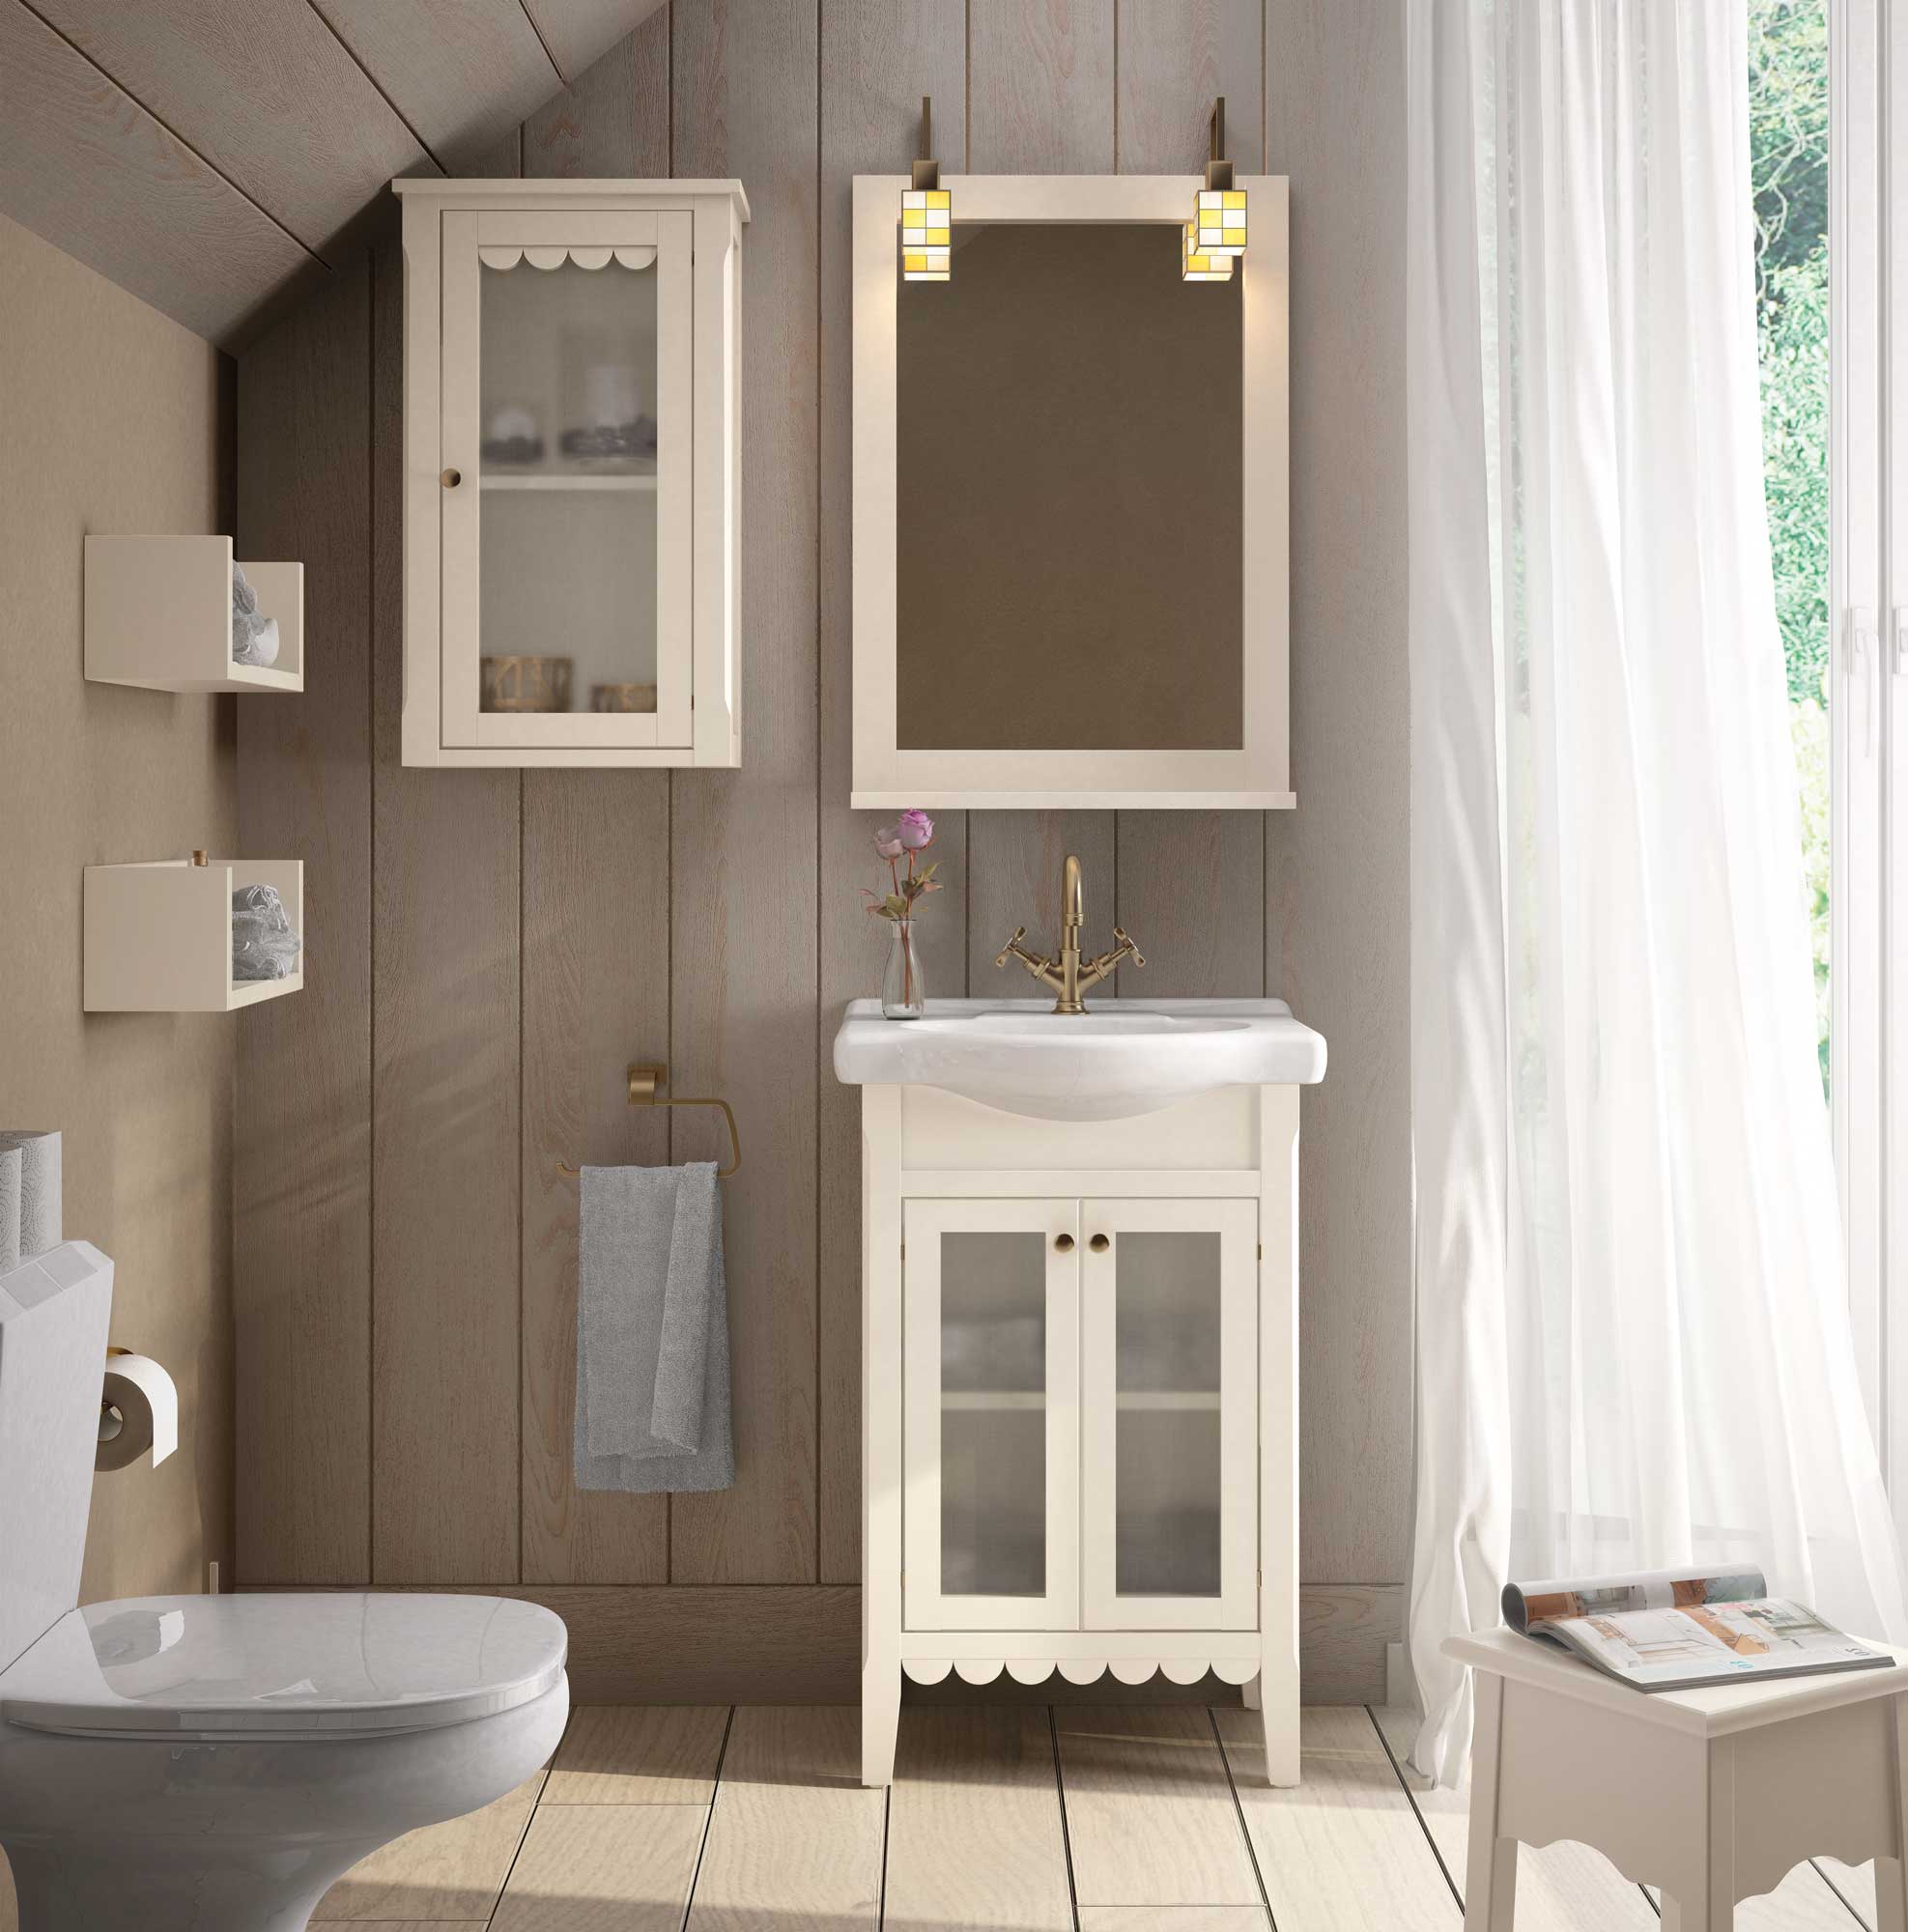 Mueble rustico para la pila de lavamanos, baños rusticos vintage